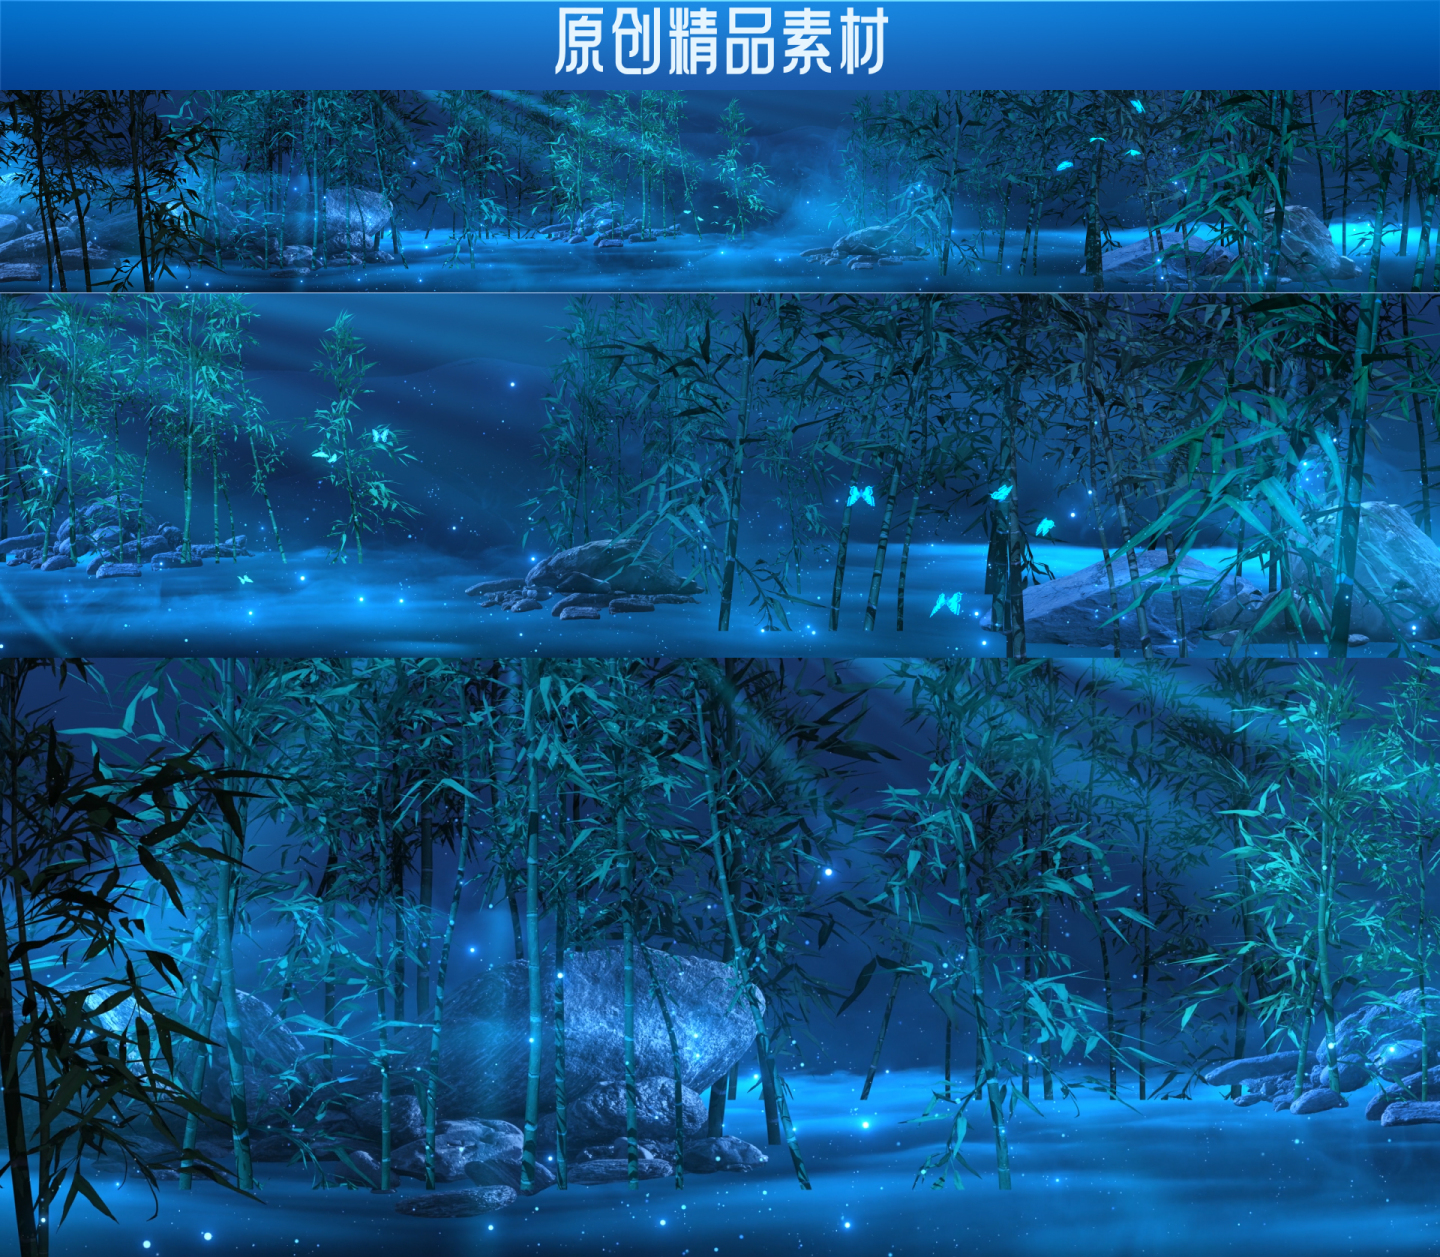 中国风 竹林 LED大屏背景视频素材2